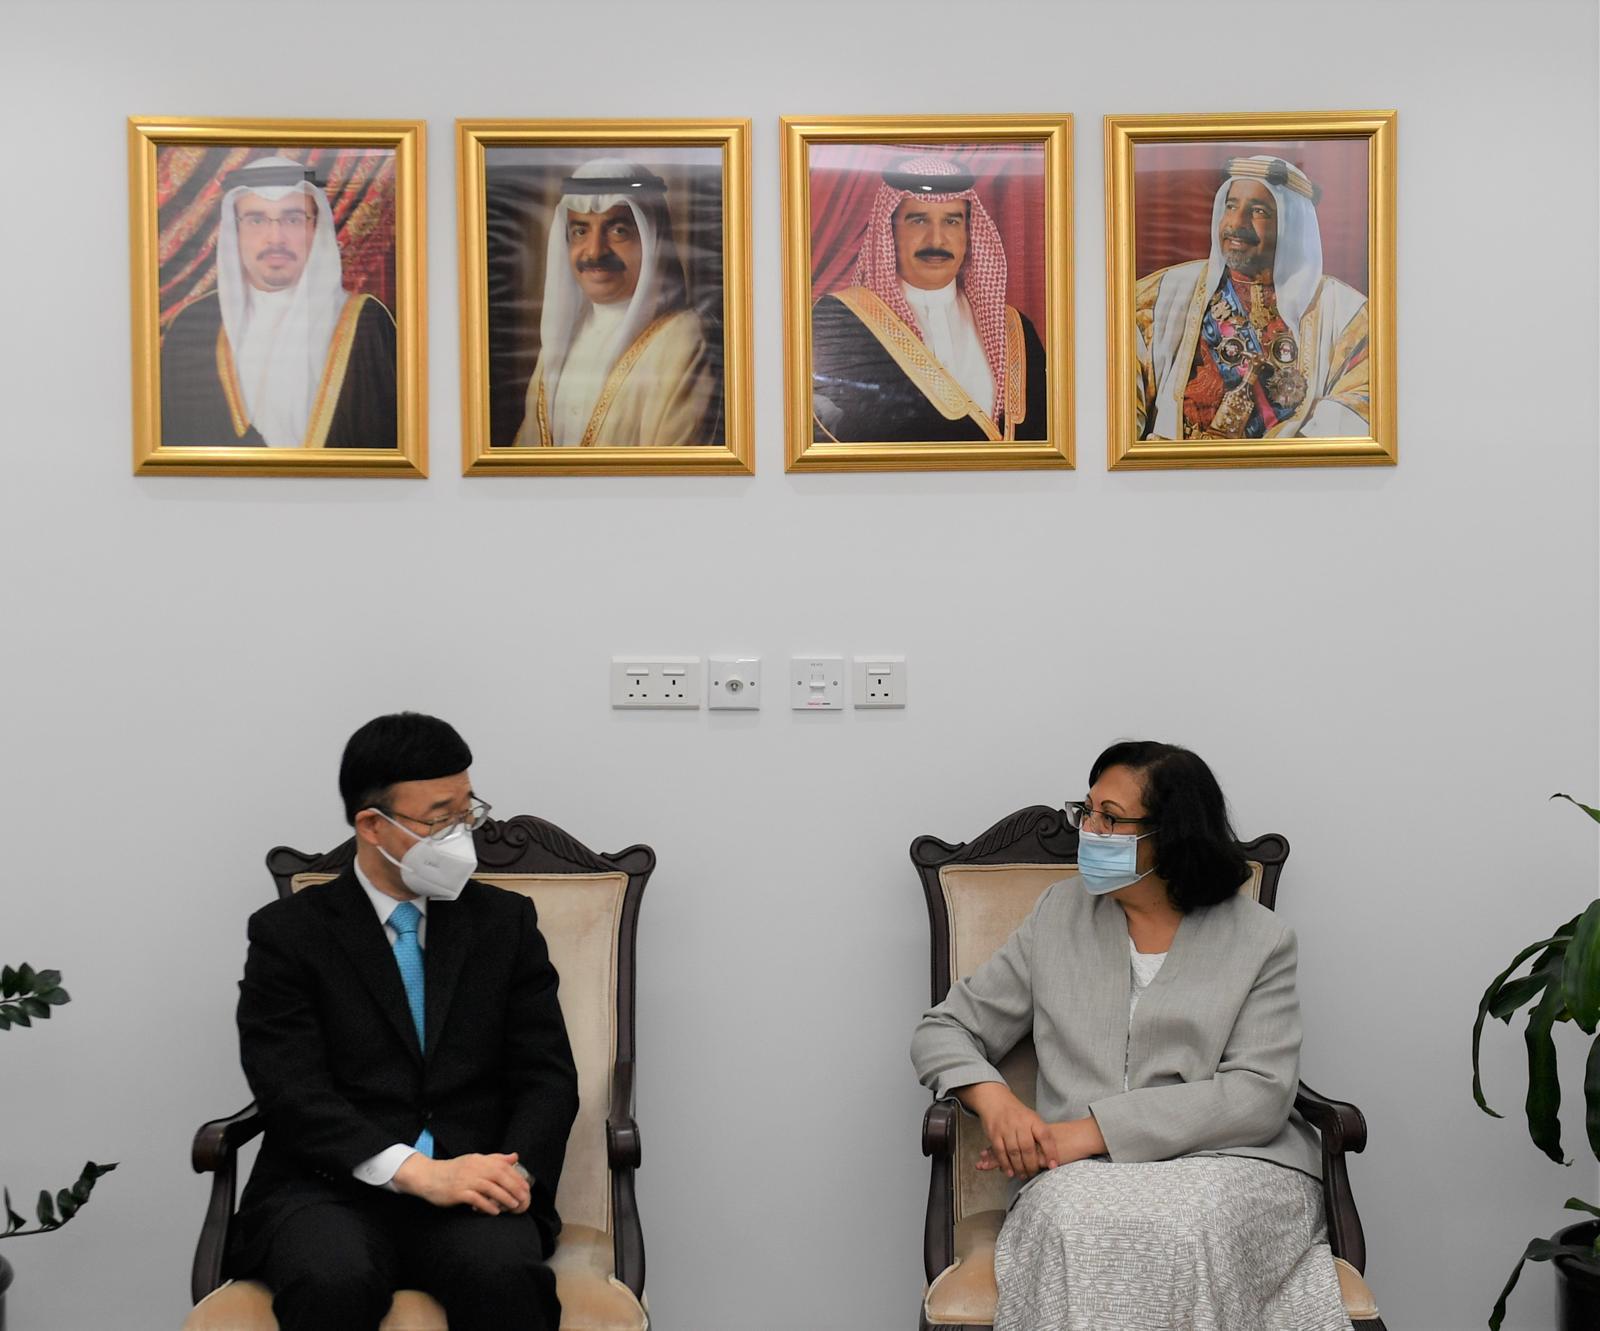 وزيرة الصحة تستقبل سفير اليابان لدى مملكة البحرين وذلك بمناسبة انتهاء فترة عمله الدبلوماسي